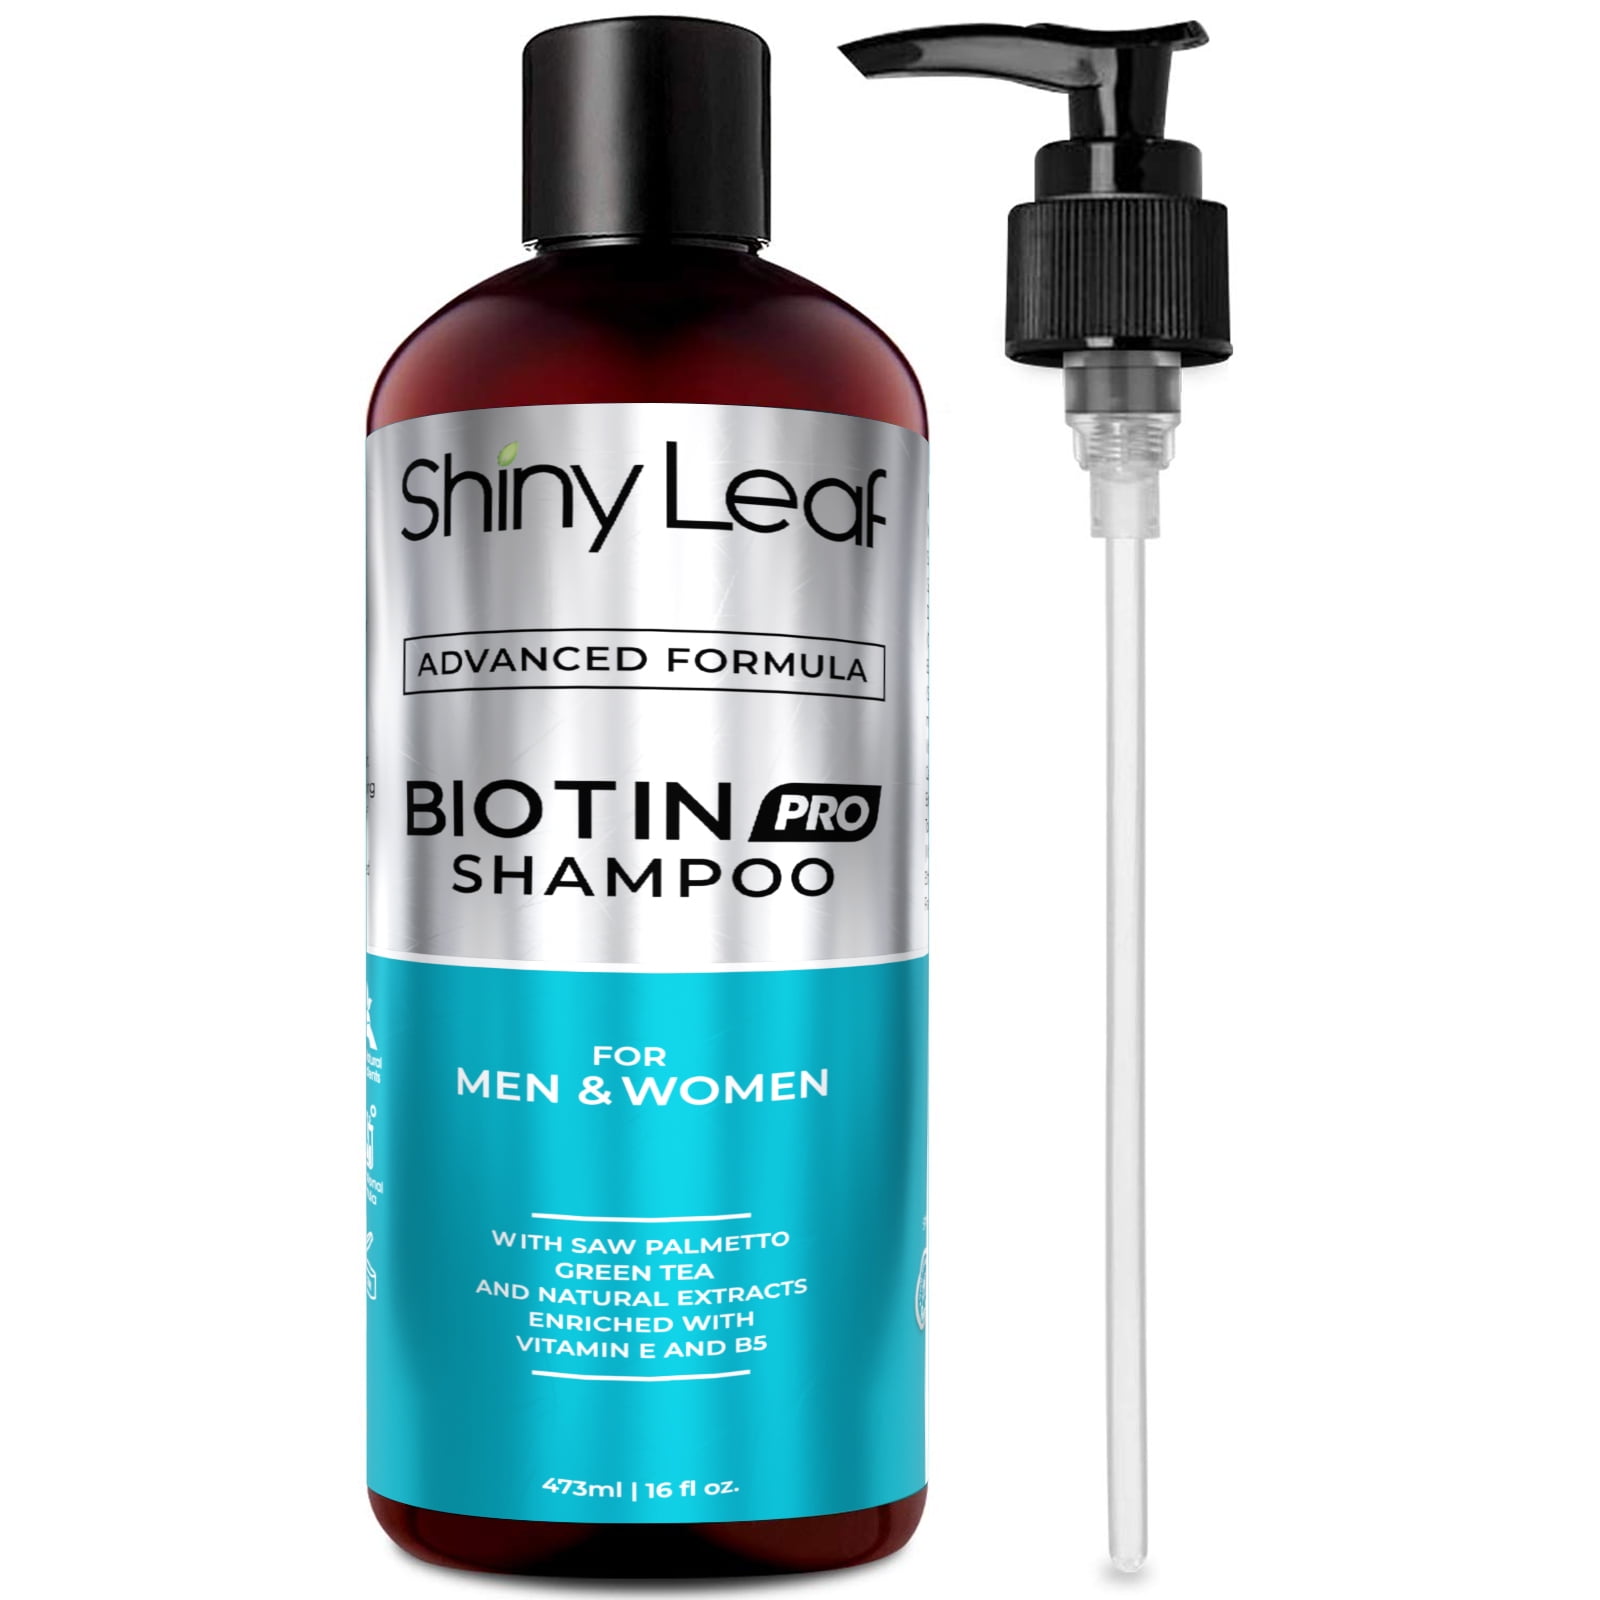 Shiny Leaf Biotin Shampoo with Saw Palmetto 16 oz -